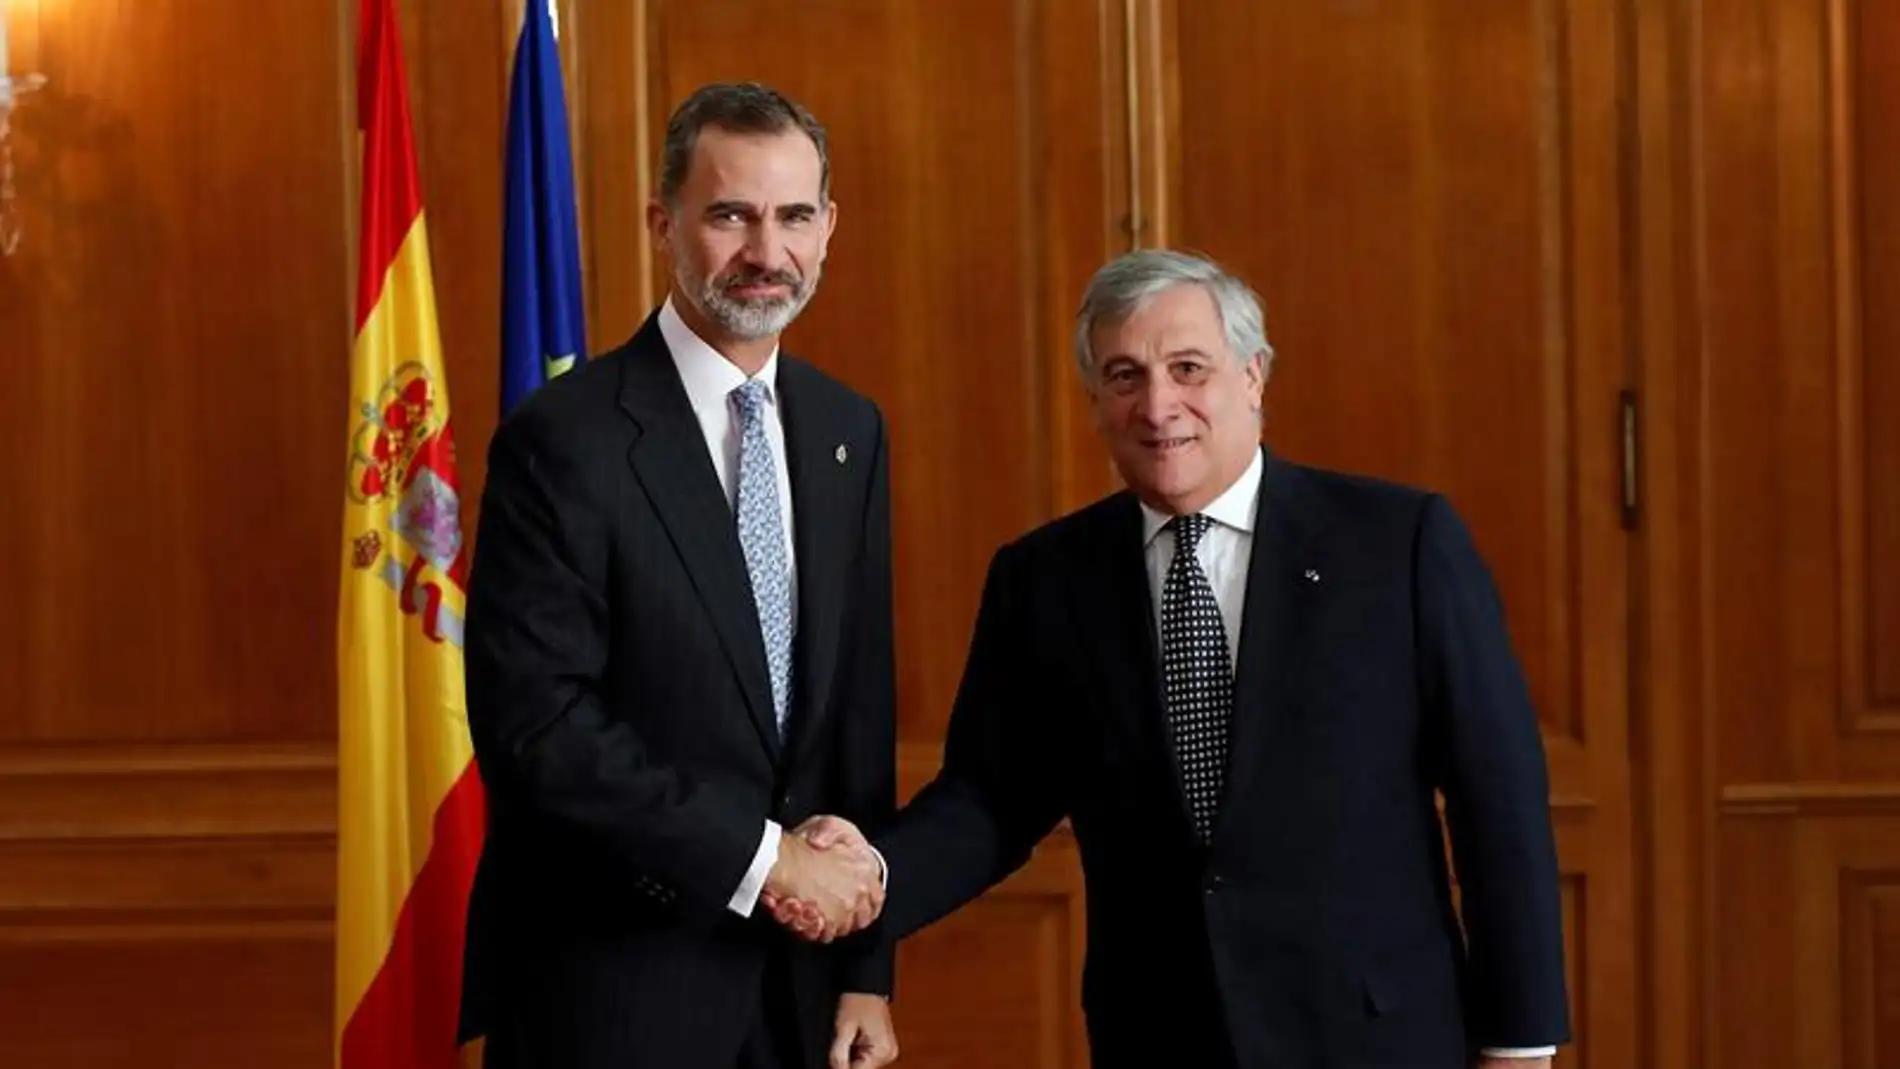 El Rey Felipe VI con Antonio Tajani